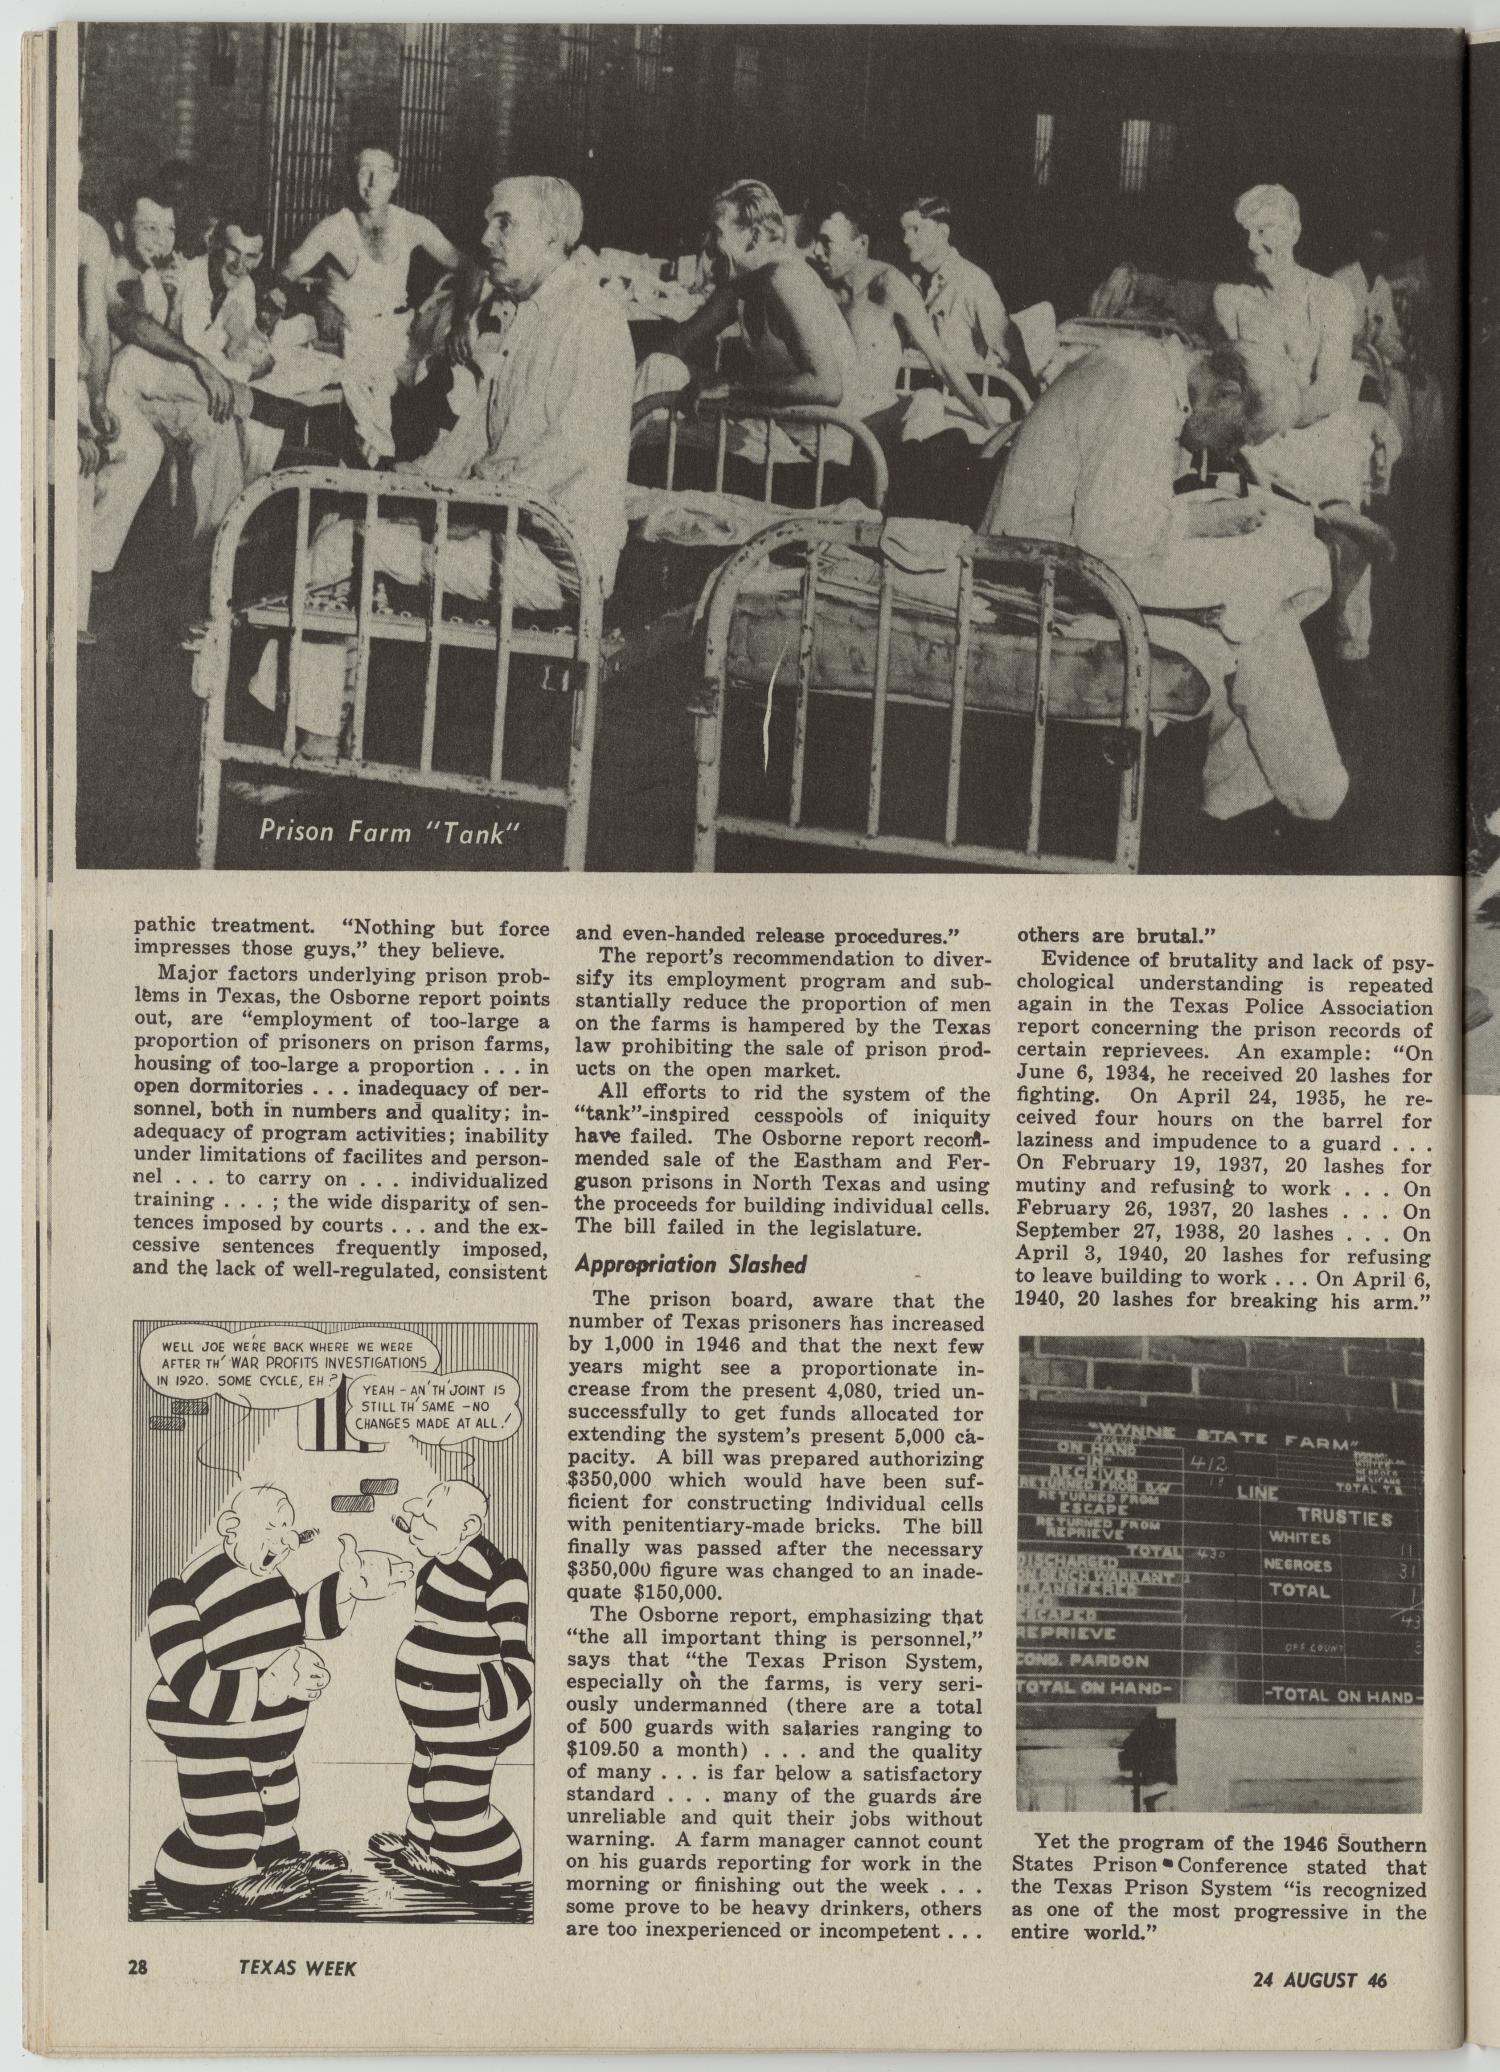 Texas Week, Volume 1, Number 3, August 24, 1946
                                                
                                                    28
                                                